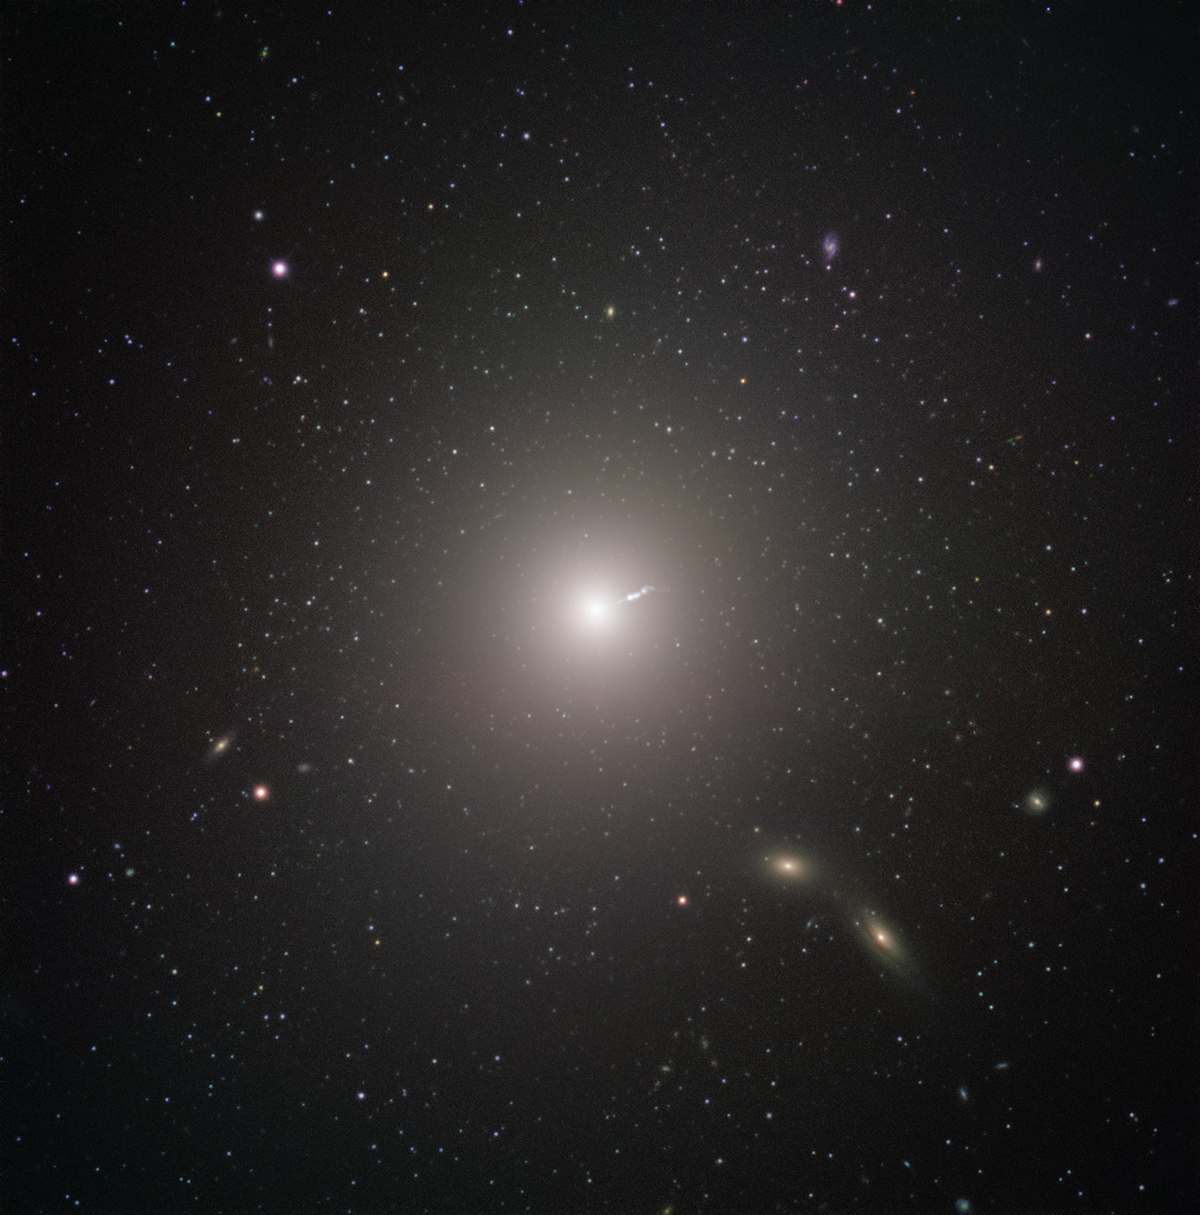 Messier 87 (M87) es una enorme galaxia elíptica ubicada a unos 55 millones de años luz de la Tierra, visible en la constelación de Virgo | ESO